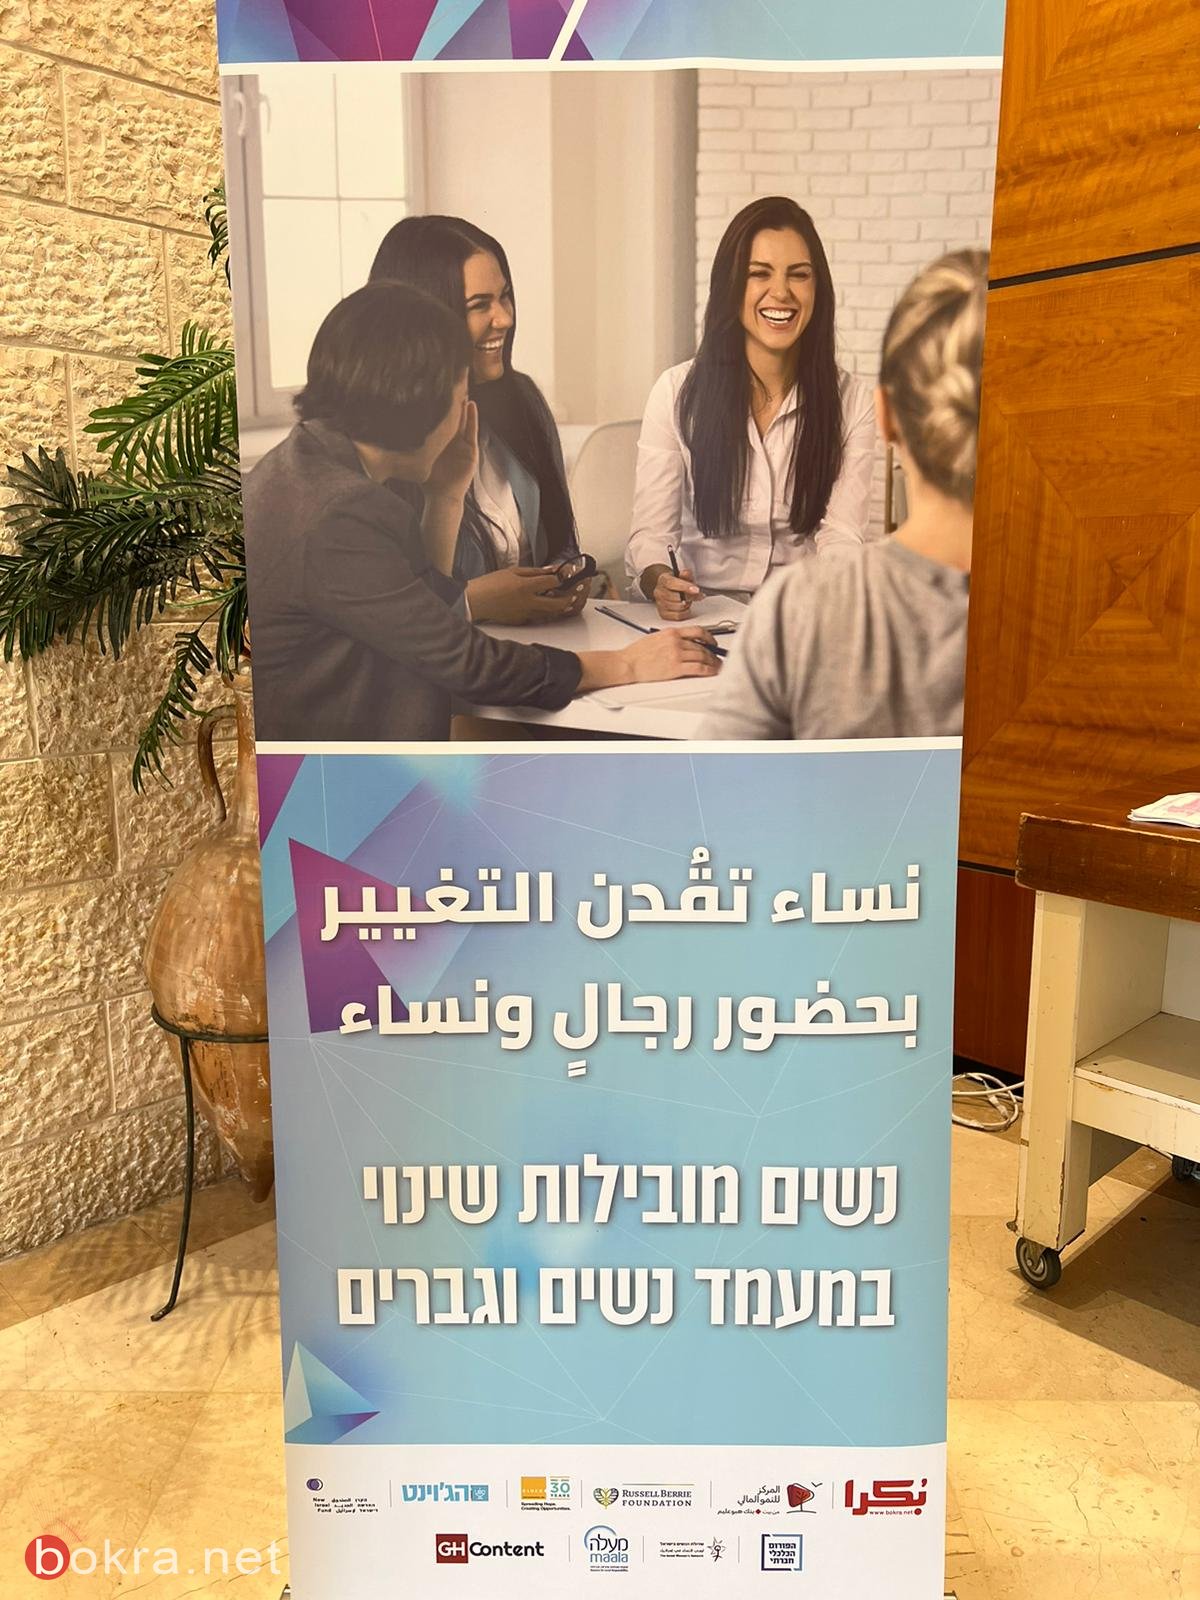 "لا أحلام مستحيلة" .. مشاركة واسعة وكلمات هامة في مؤتمر "نساء يقدن التغيير" في الناصرة-0